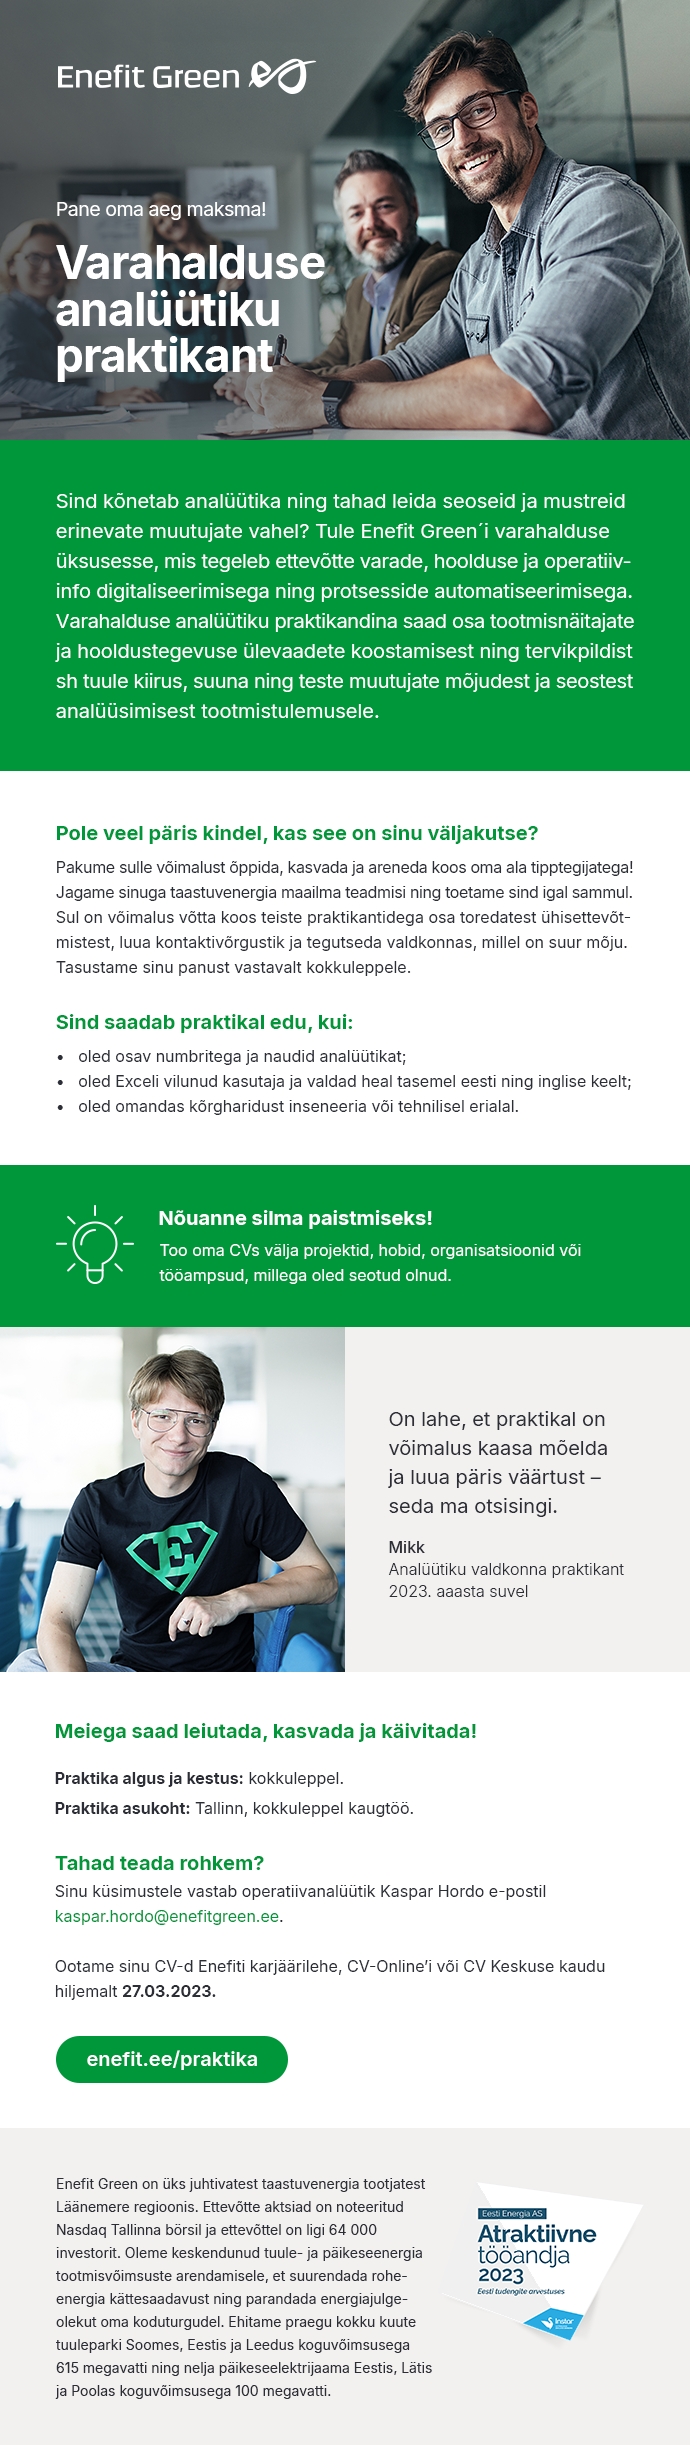 Eesti Energia AS Varahalduse analüütiku praktikant